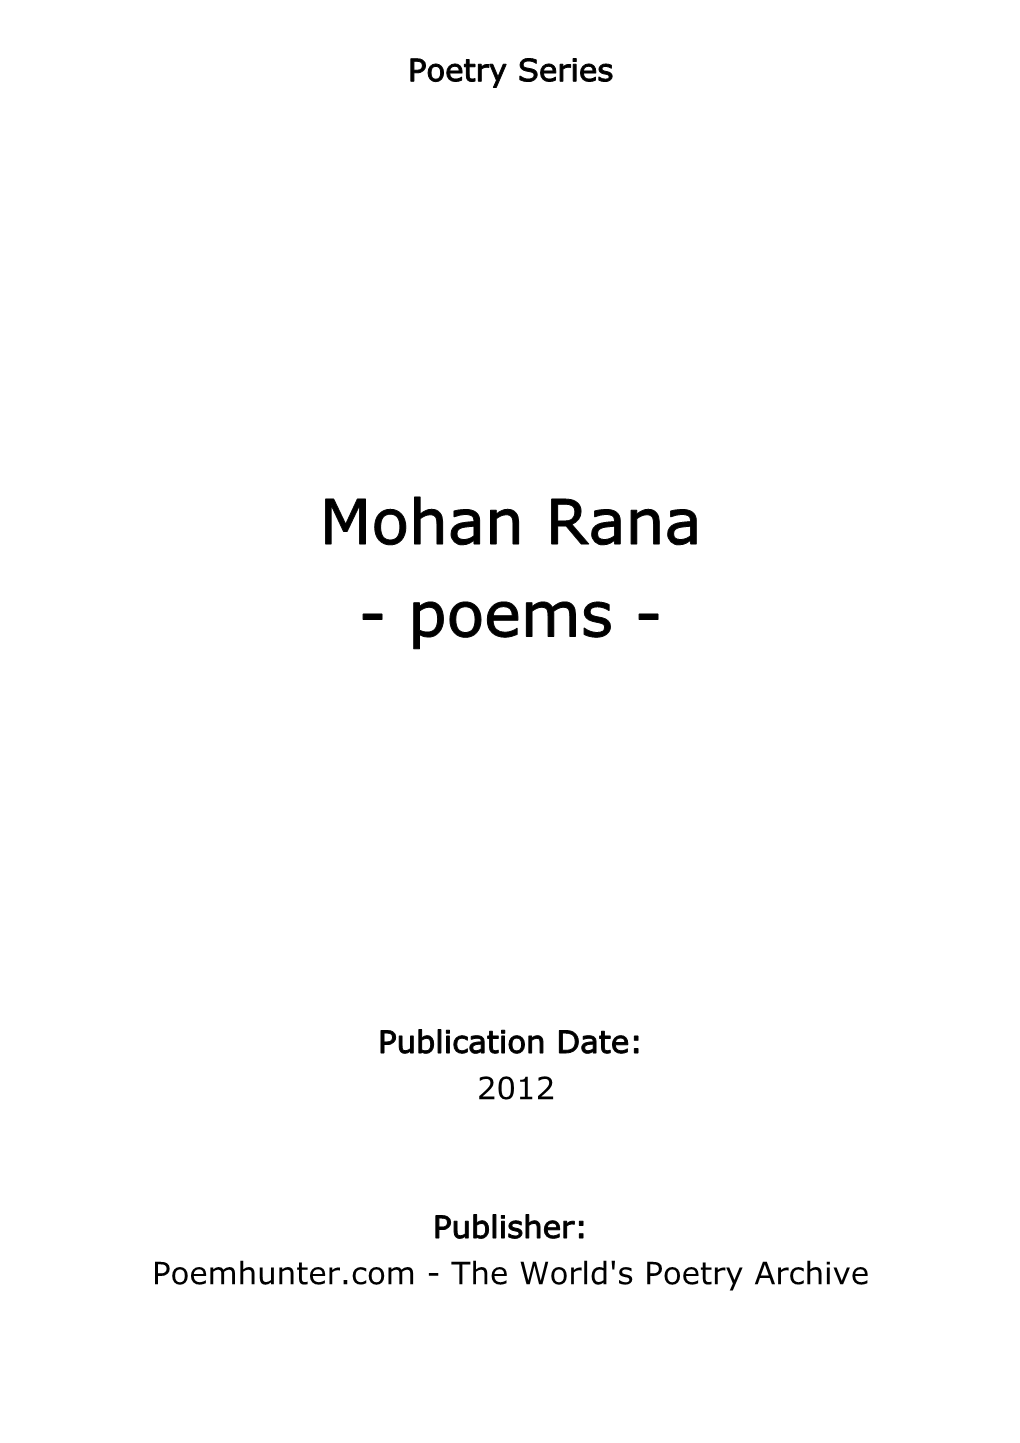 Mohan Rana - Poems